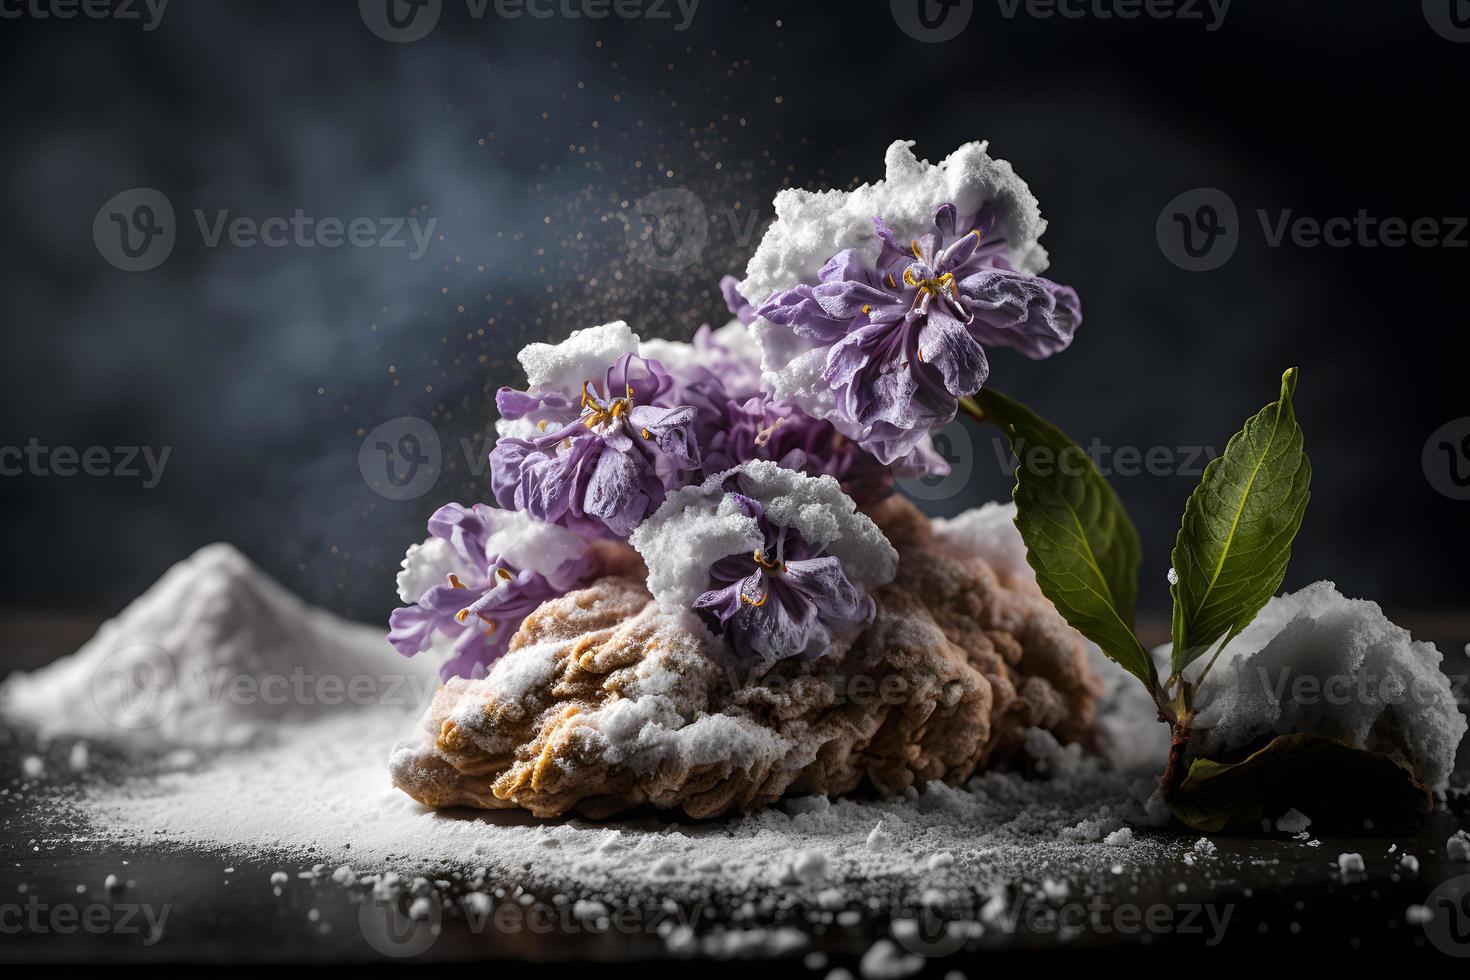 hecho en casa y sabroso frito lila flor con en polvo azúcar comida fotografía foto